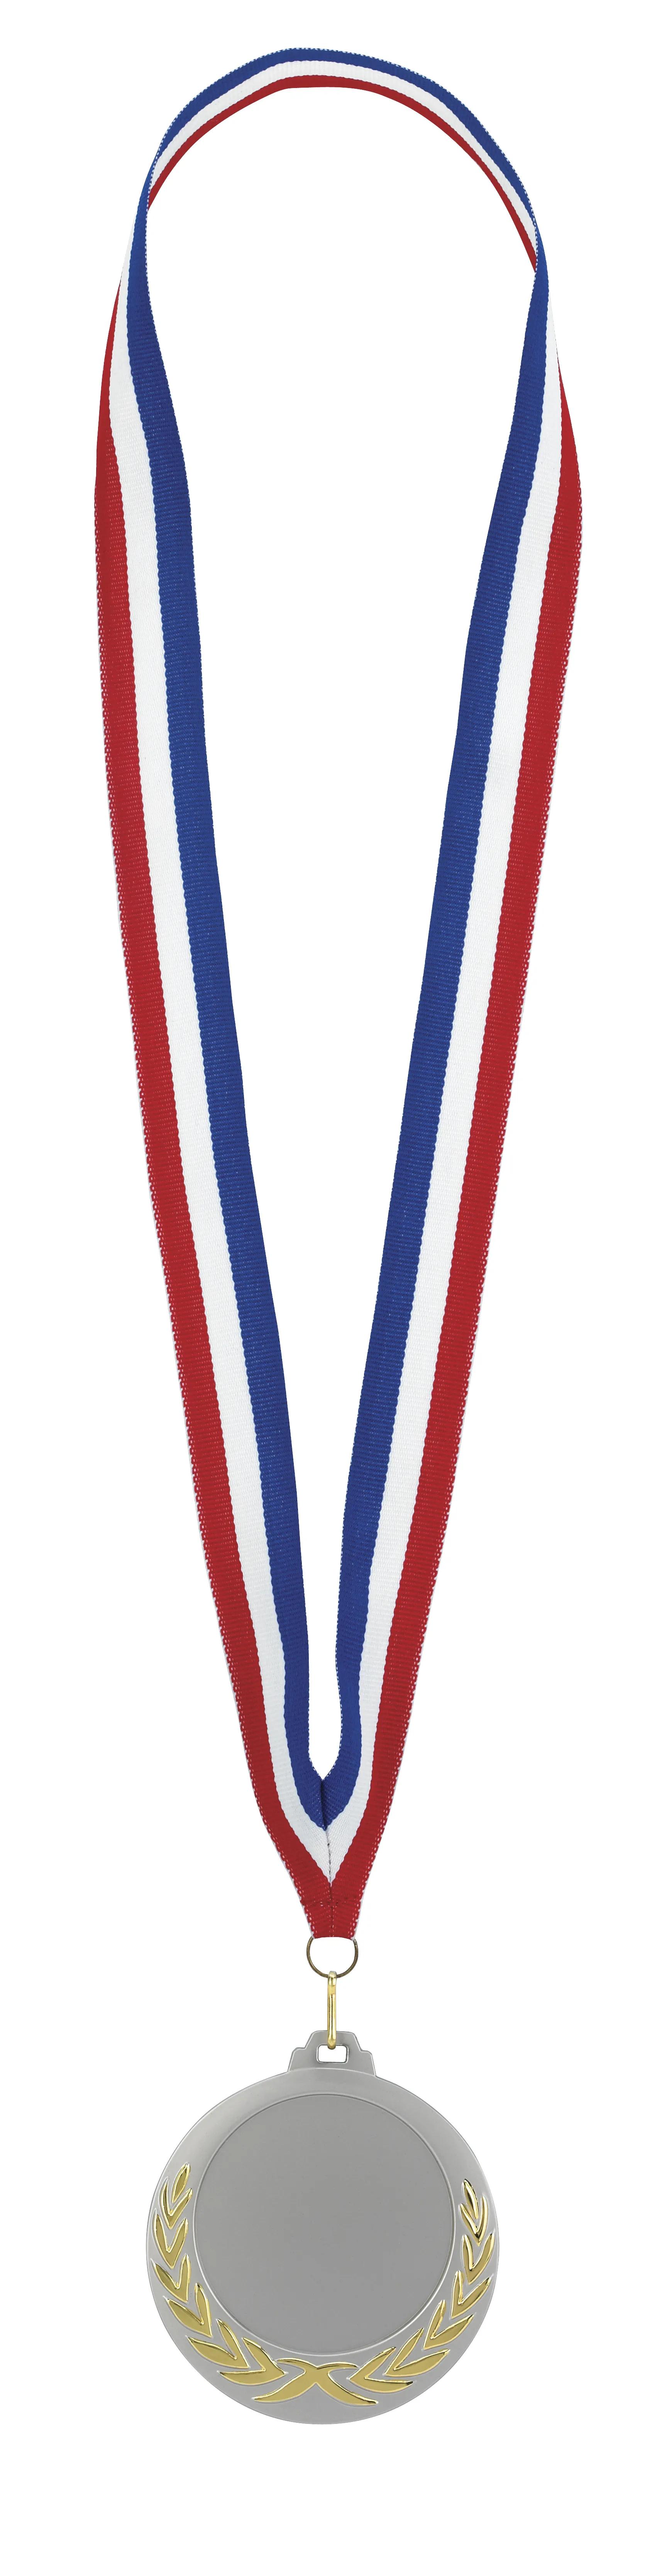 Laurel Wreath Medal 4 of 26